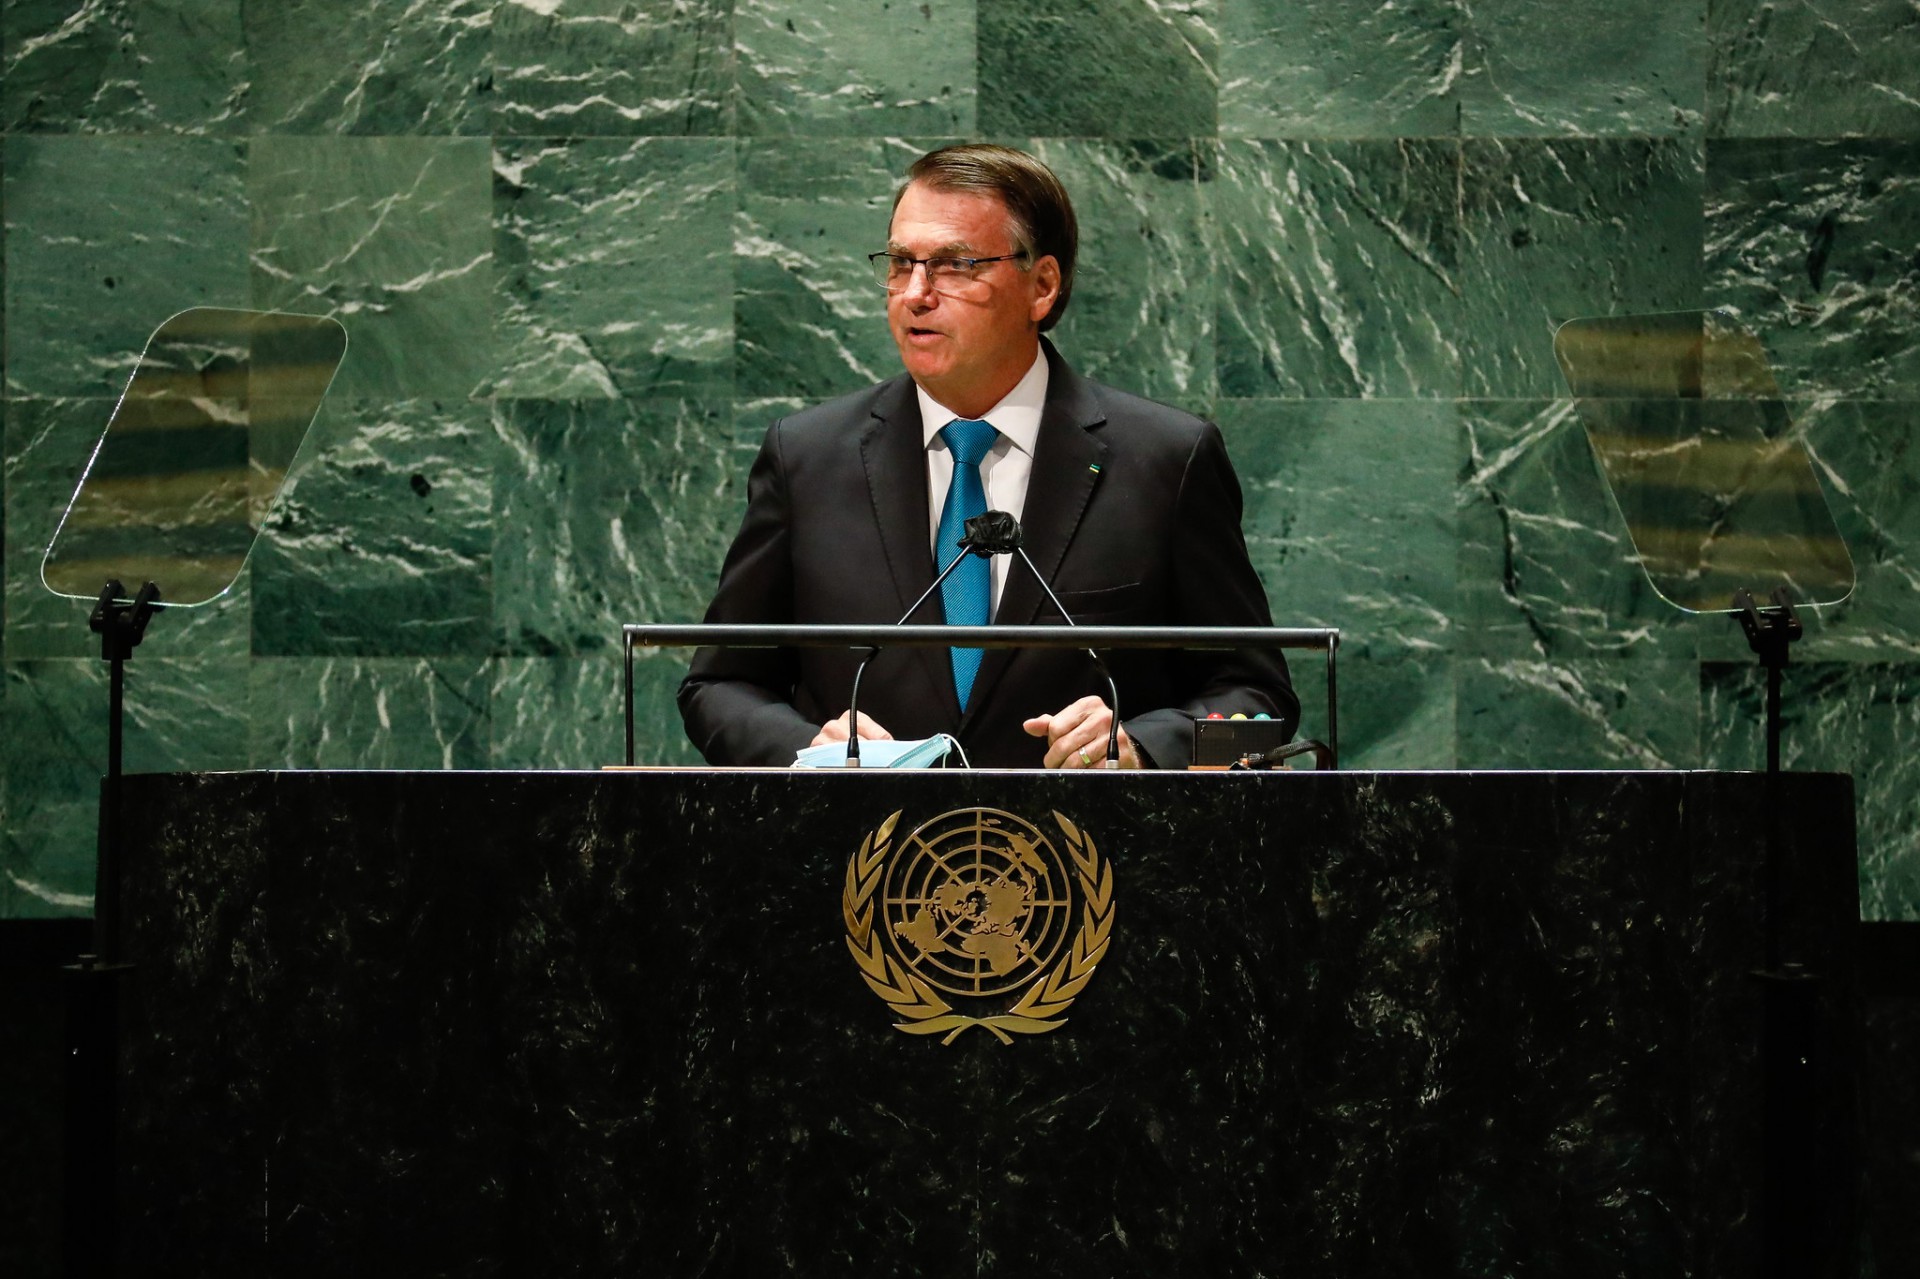 Imprensa internacional destaca tom ‘provocador’ e ‘figura controversa’ de Bolsonaro após discurso na ONU